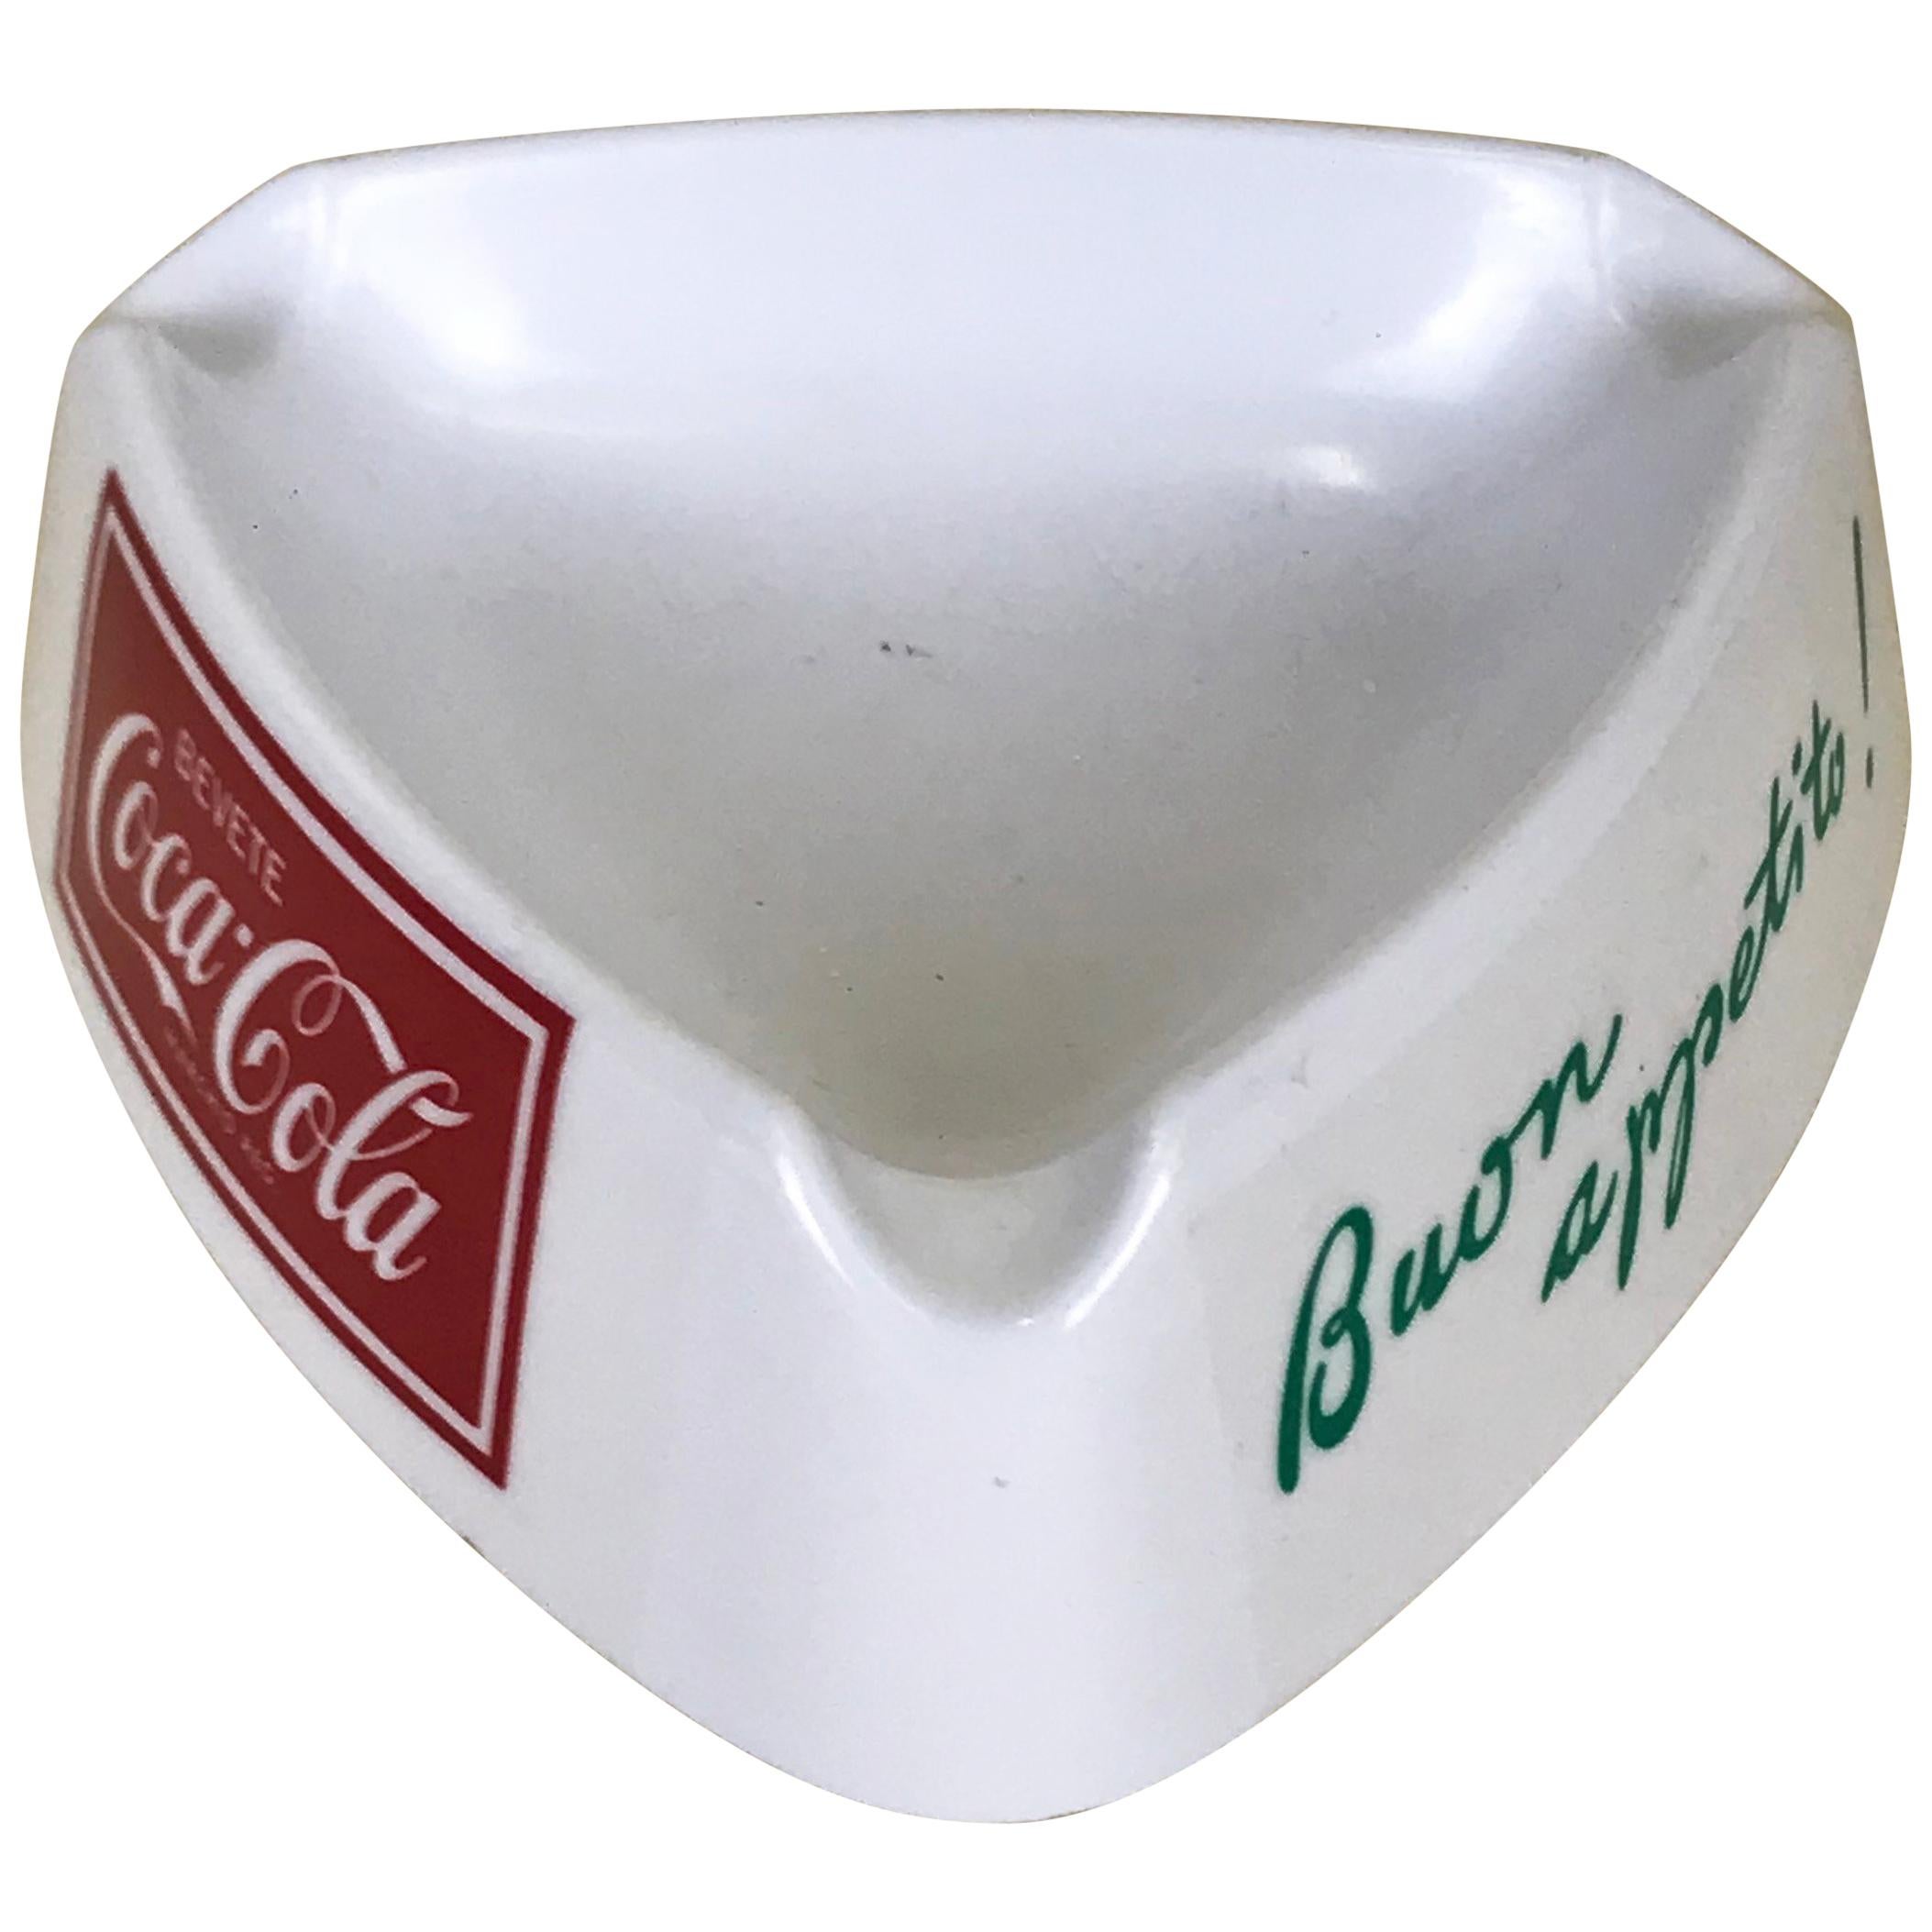 1960s Italian White Plastic Buon Appetito! ‘Enjoy Your Meal!’ Coca-Cola Ashtray For Sale